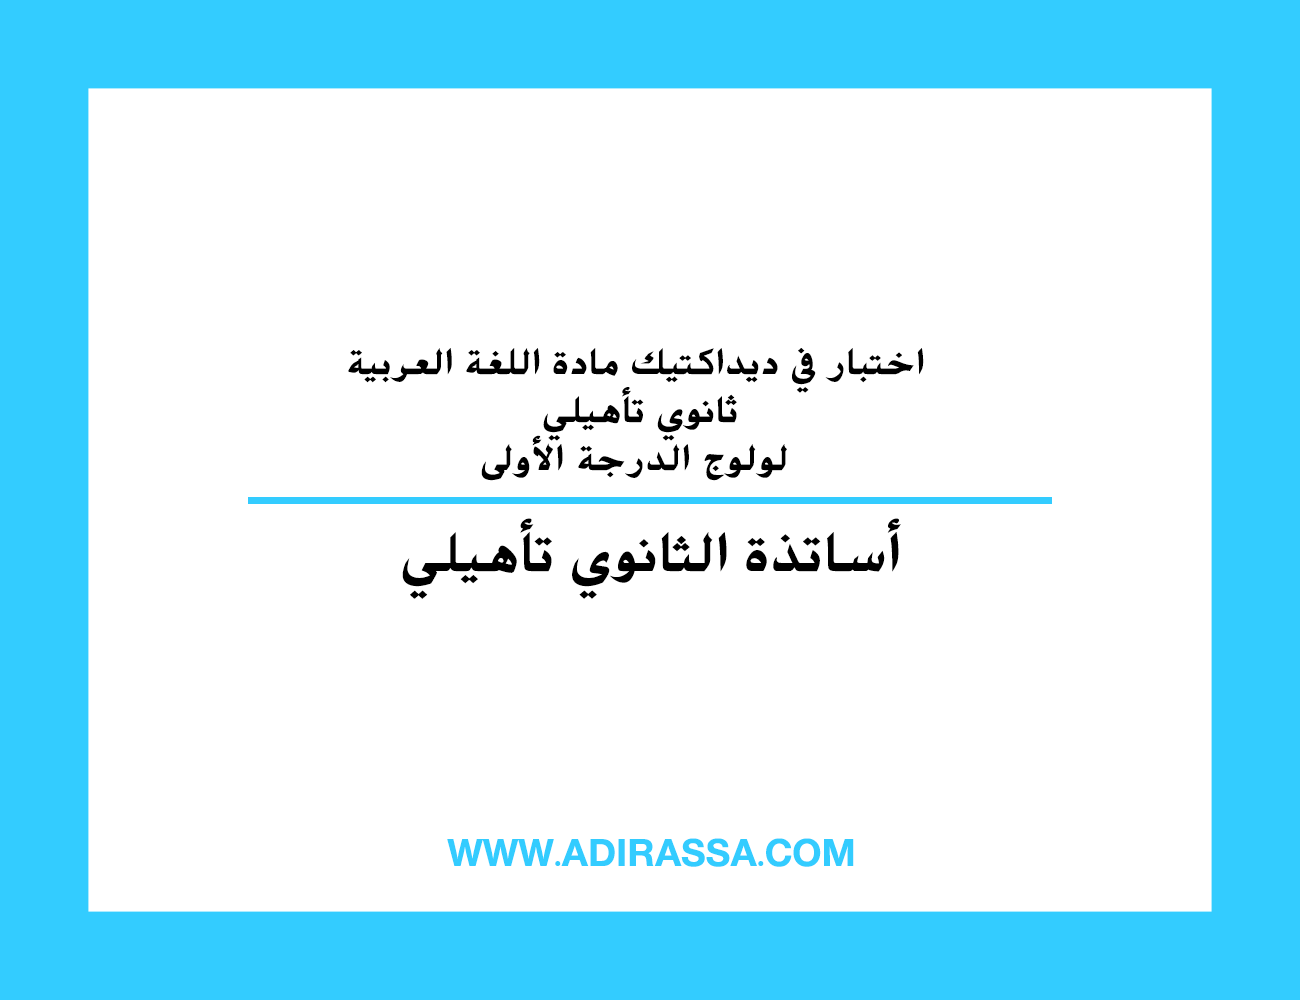 اختبار في ديداكتيك مادة اللغة العربية ثانوي تأهيلي لولوج الدرجة الأولى